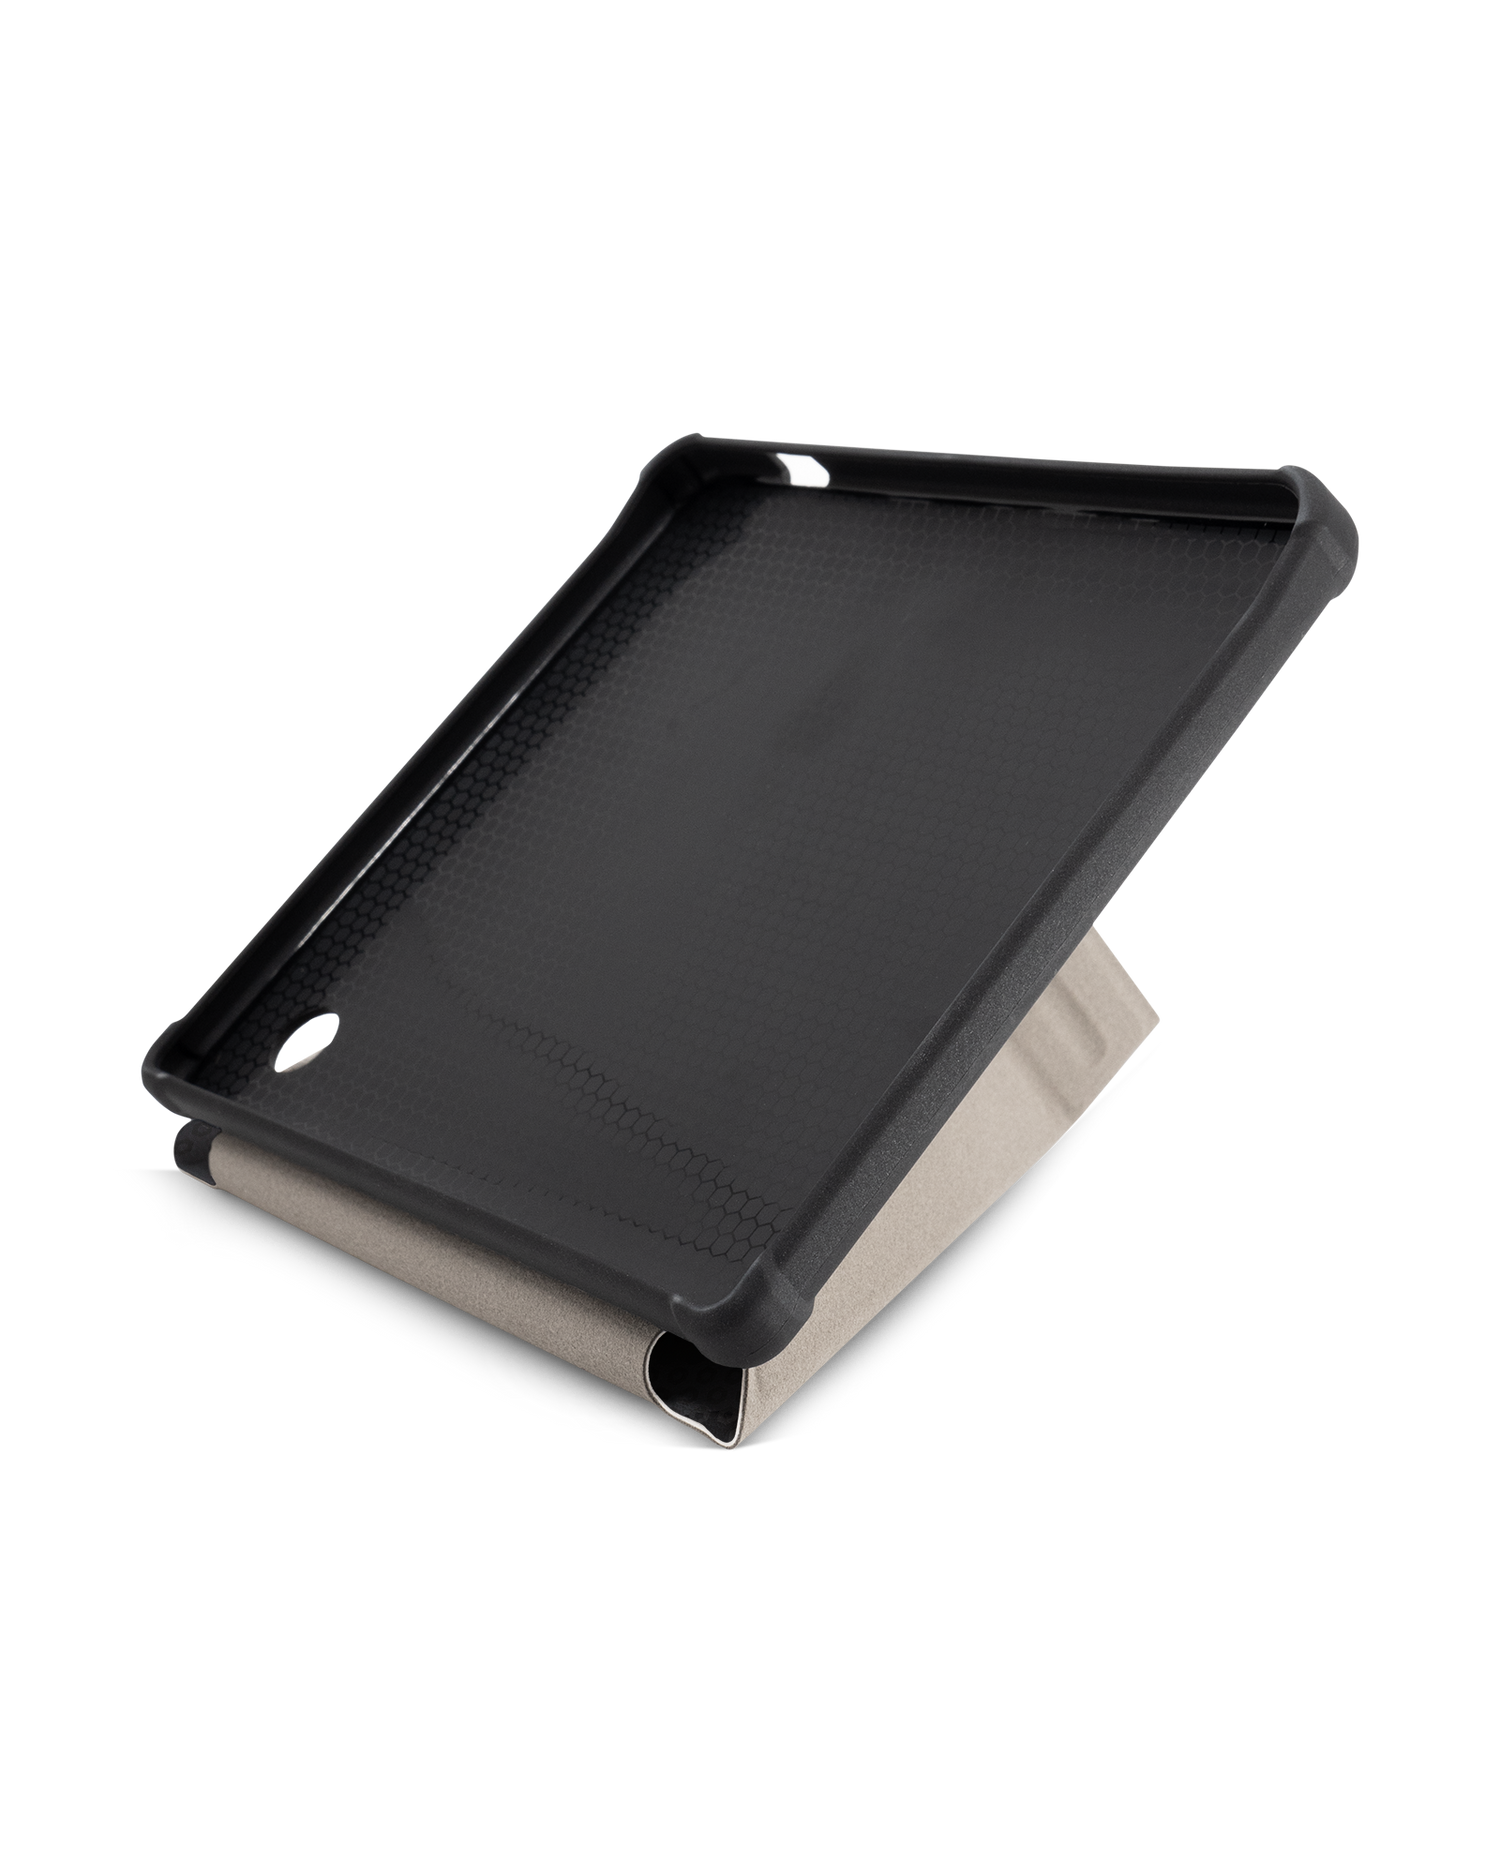 Spec Ops Dark eBook-Reader Smart Case für tolino vision 5 (2019): Aufgestellt im Querformat Innenansicht